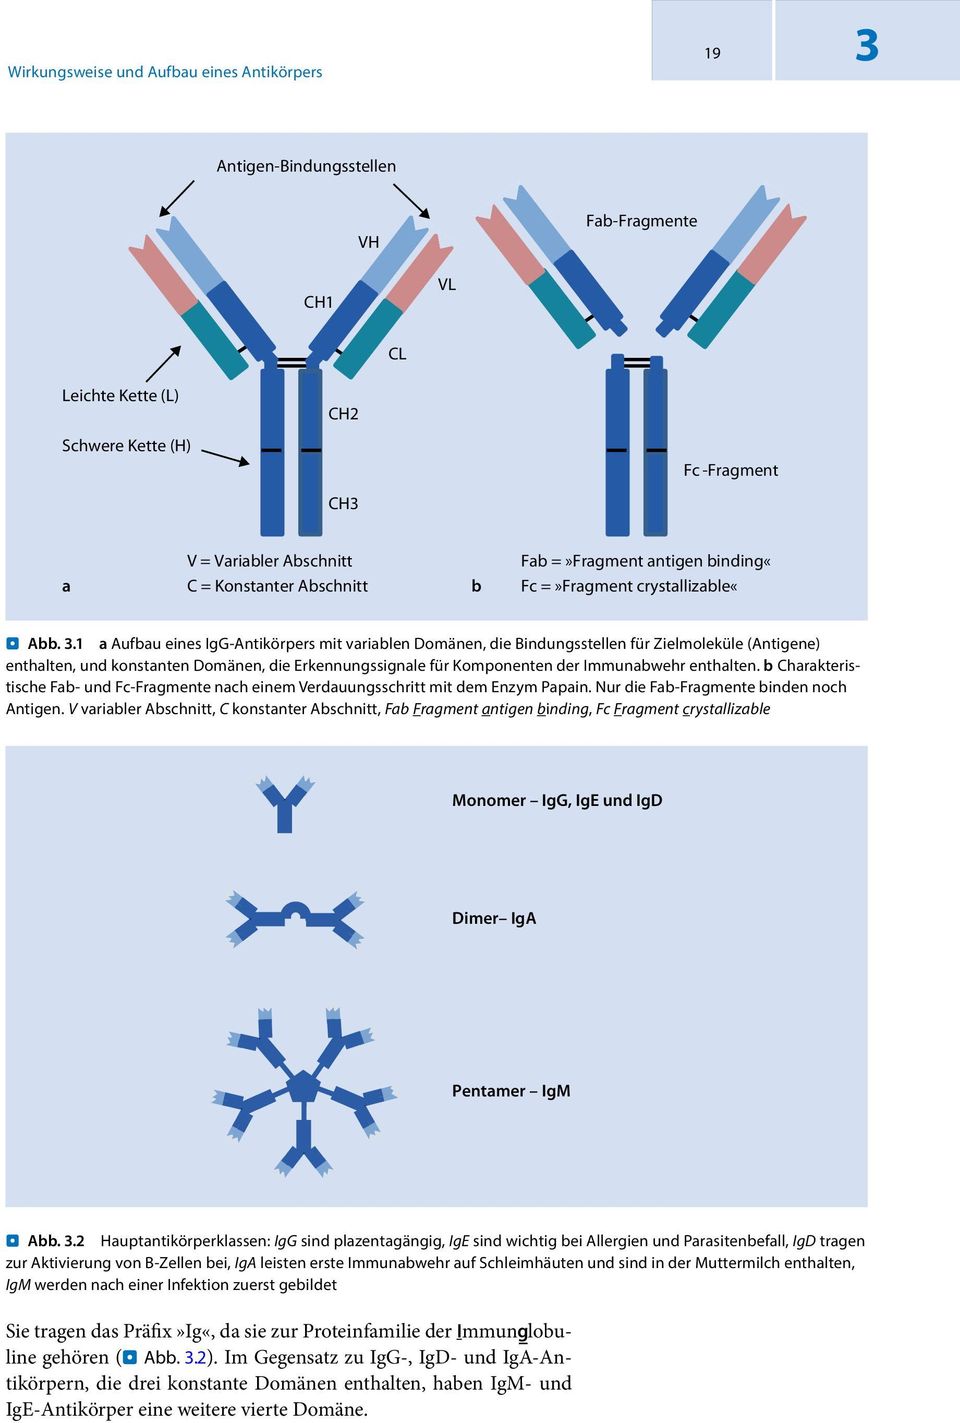 1 a Aufbau eines IgG-Antikörpers mit variablen Domänen, die Bindungsstellen für Zielmoleküle (Antigene) enthalten, und konstanten Domänen, die Erkennungssignale für Komponenten der Immunabwehr